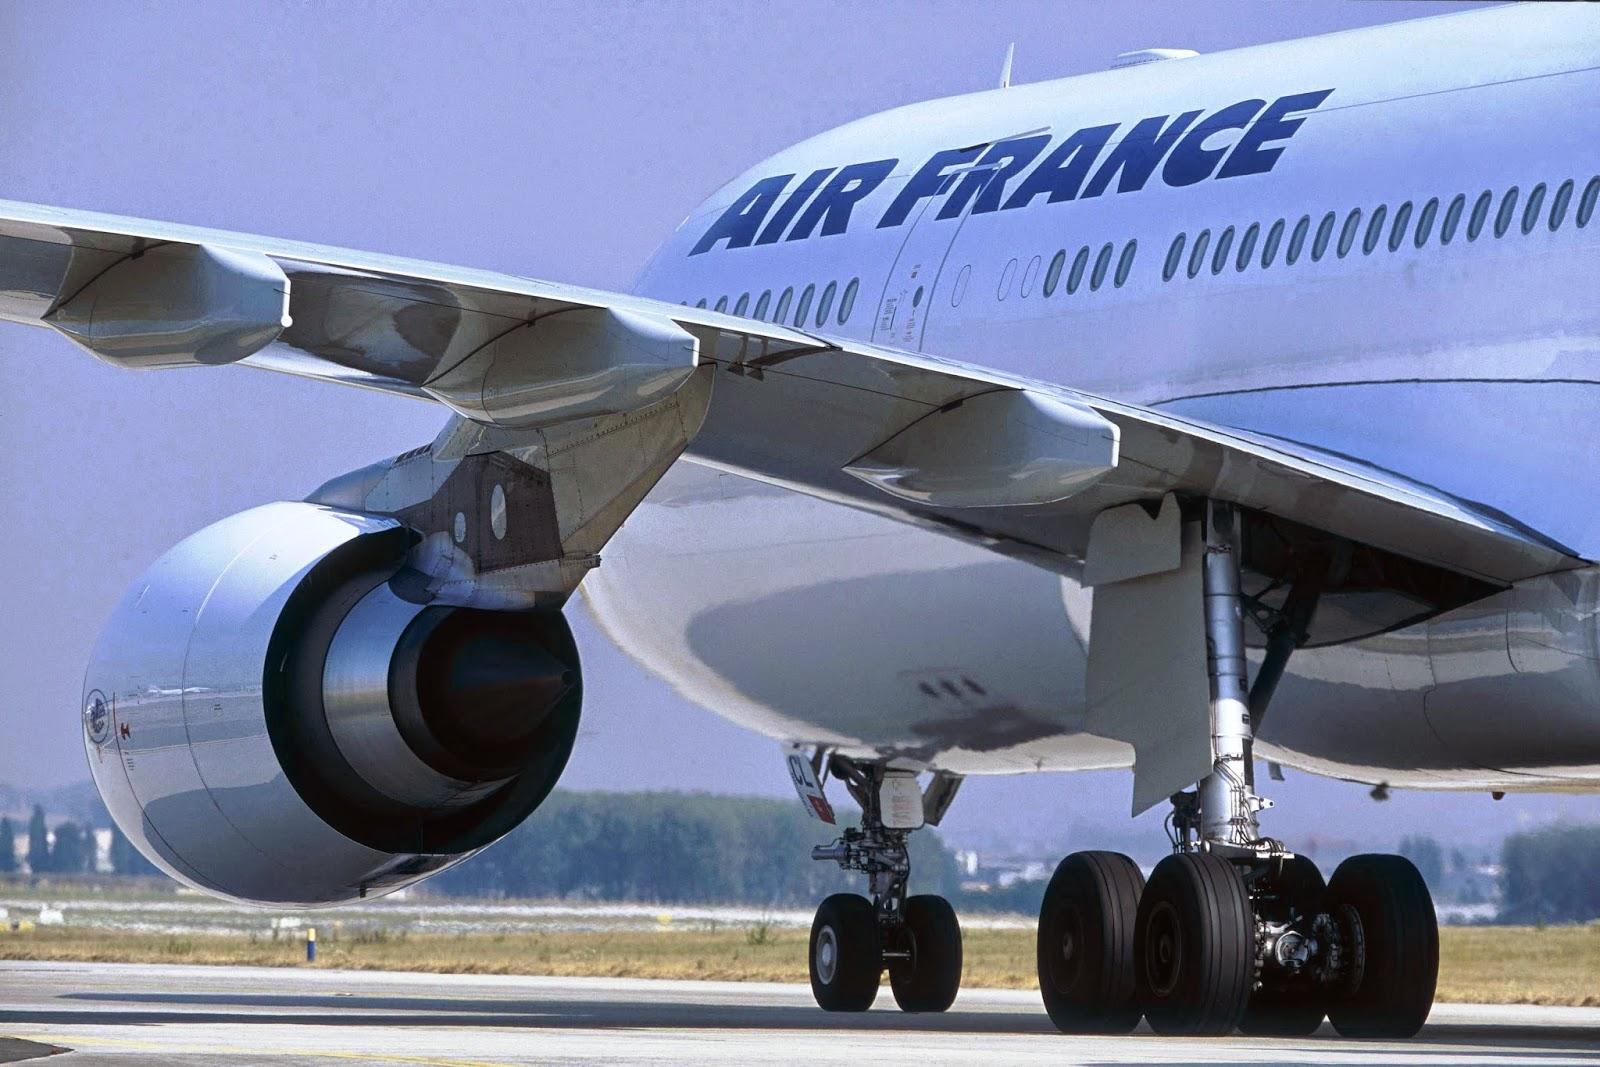 SOCIÉTÉ > Fin de grève chez Air France : Manuel Valls crâne sur la fermeté de son gouvernement